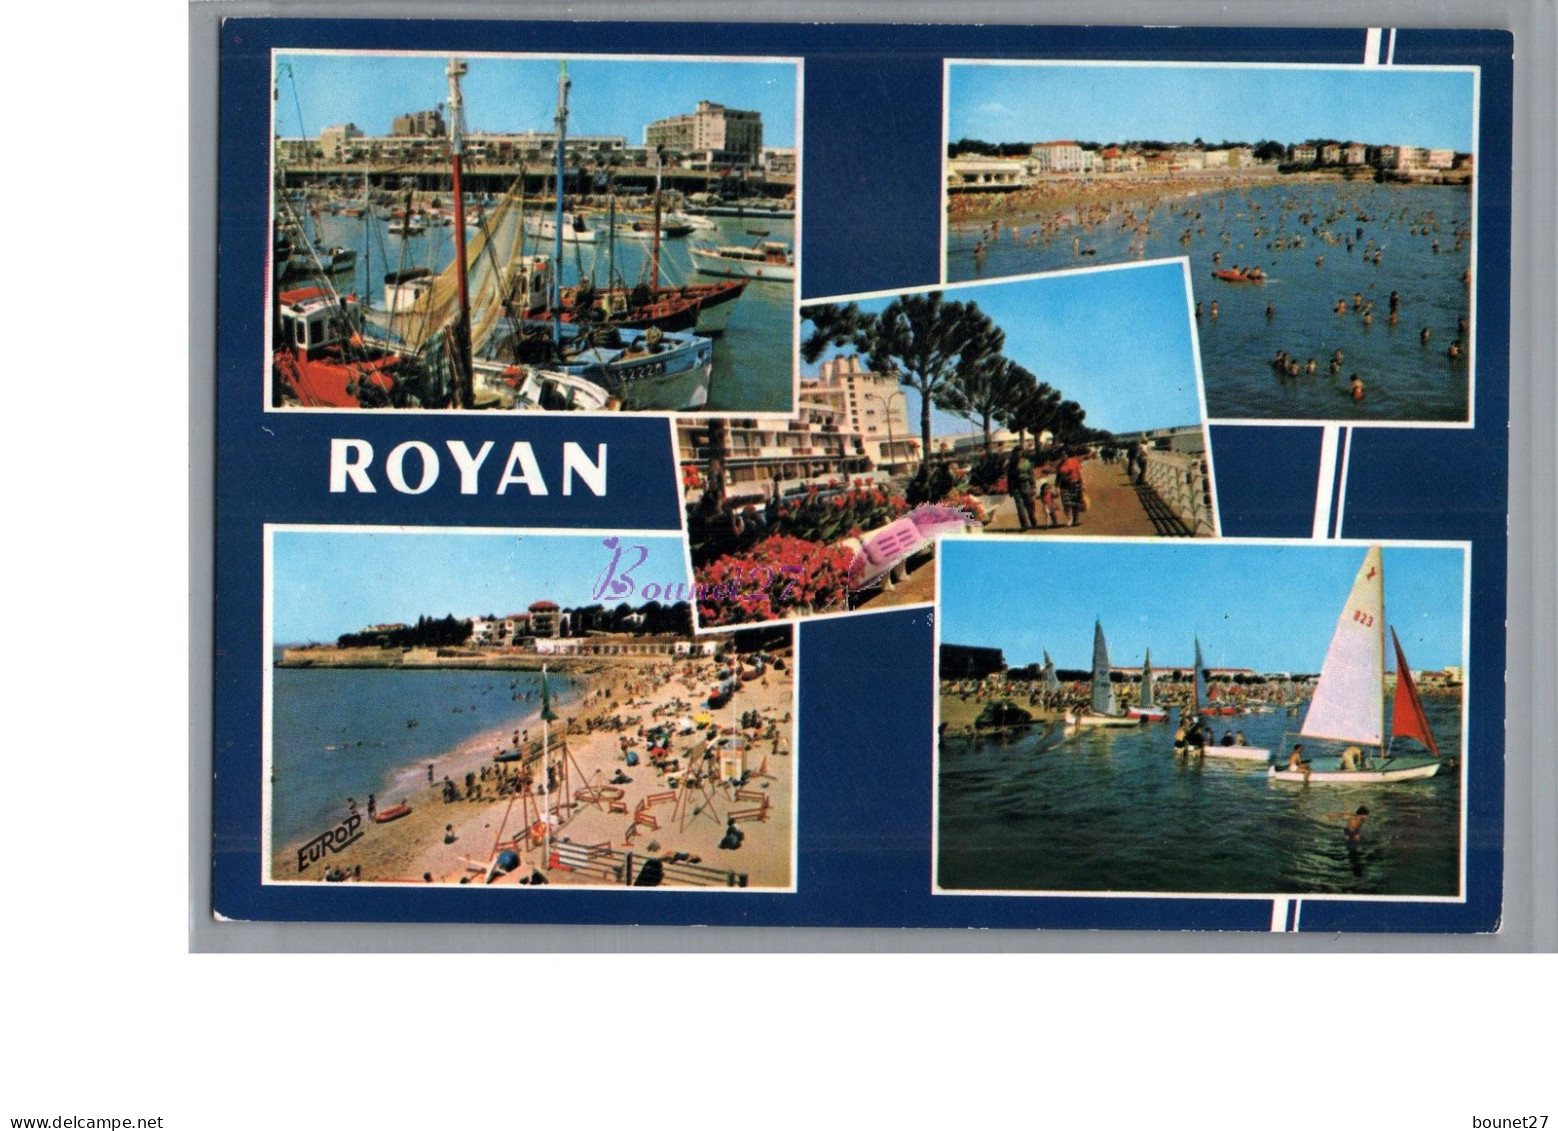 ROYAN 17 - La Plus Moderne Des Stations Balneaire Port Plage Voilier 1974 - Royan